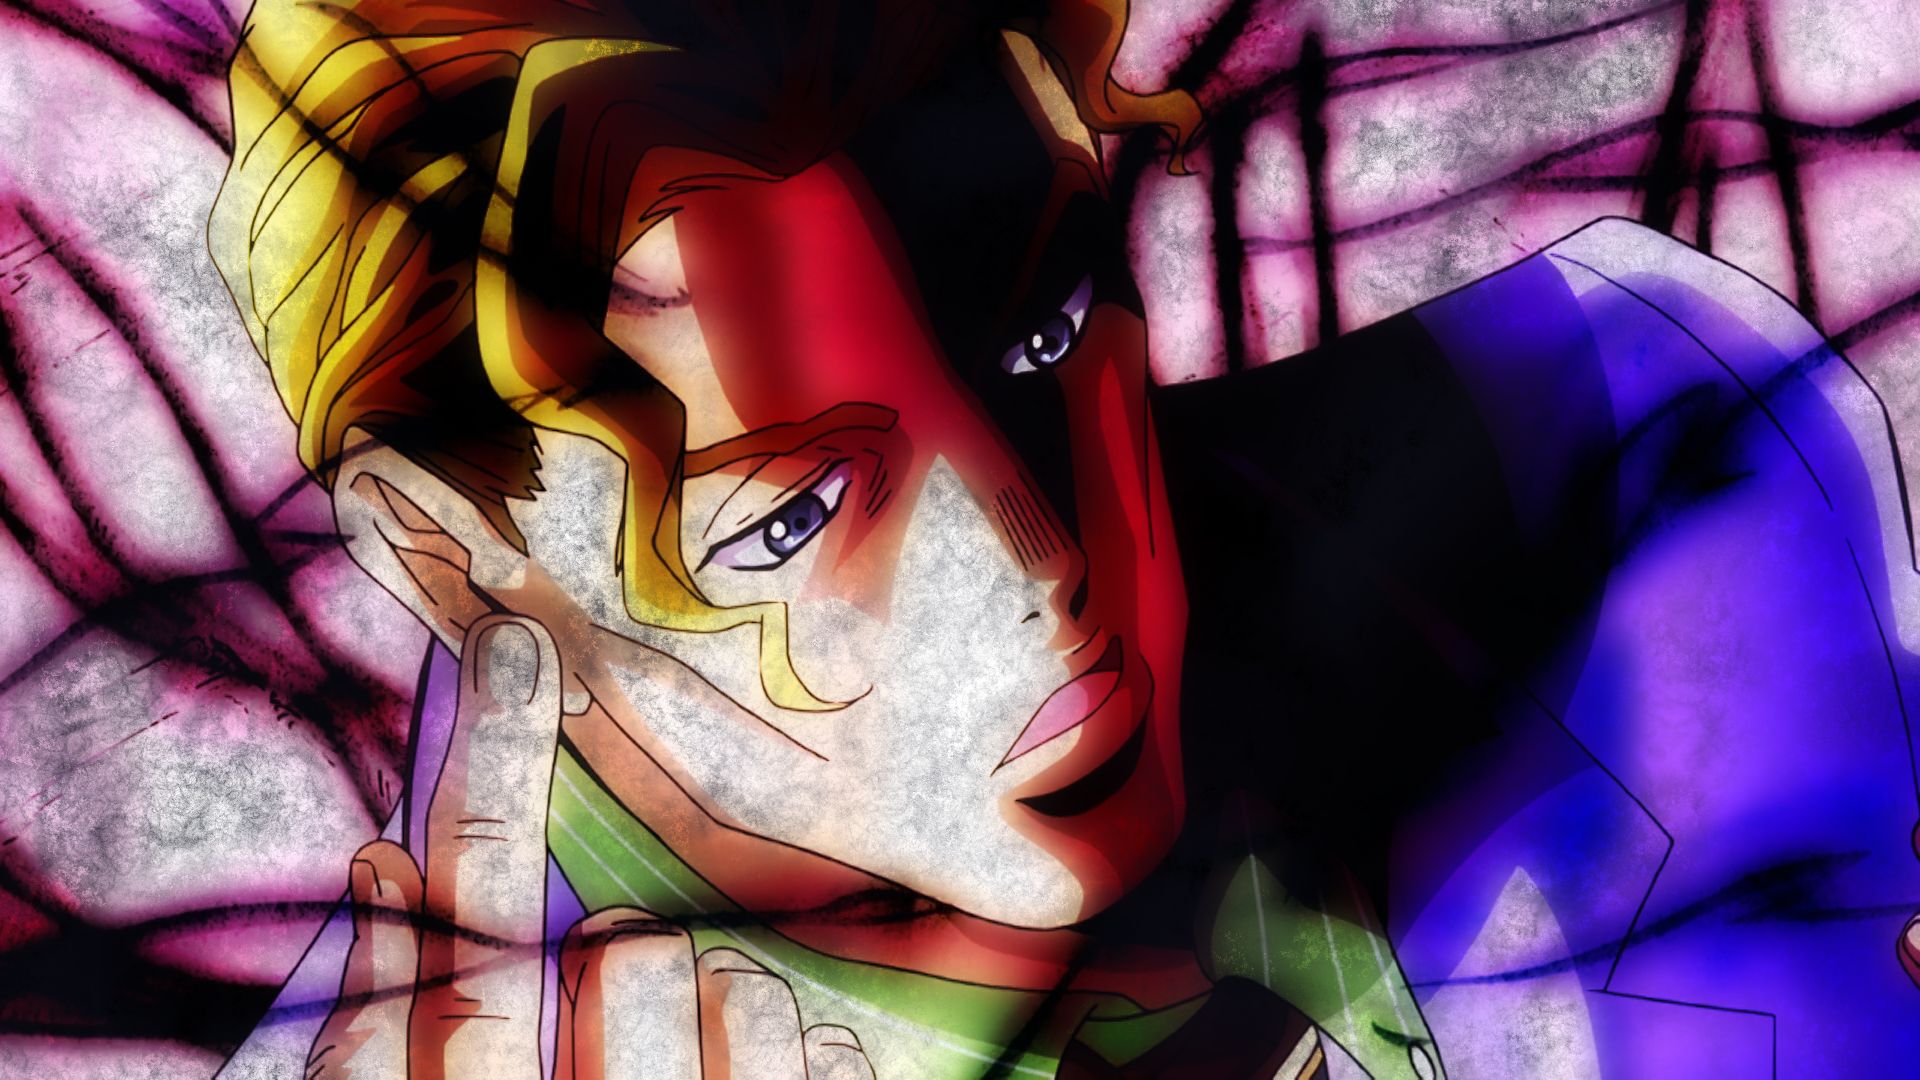 Descarga gratuita de fondo de pantalla para móvil de Animado, Jojo's Bizarre Adventure, Yoshikage Kira.